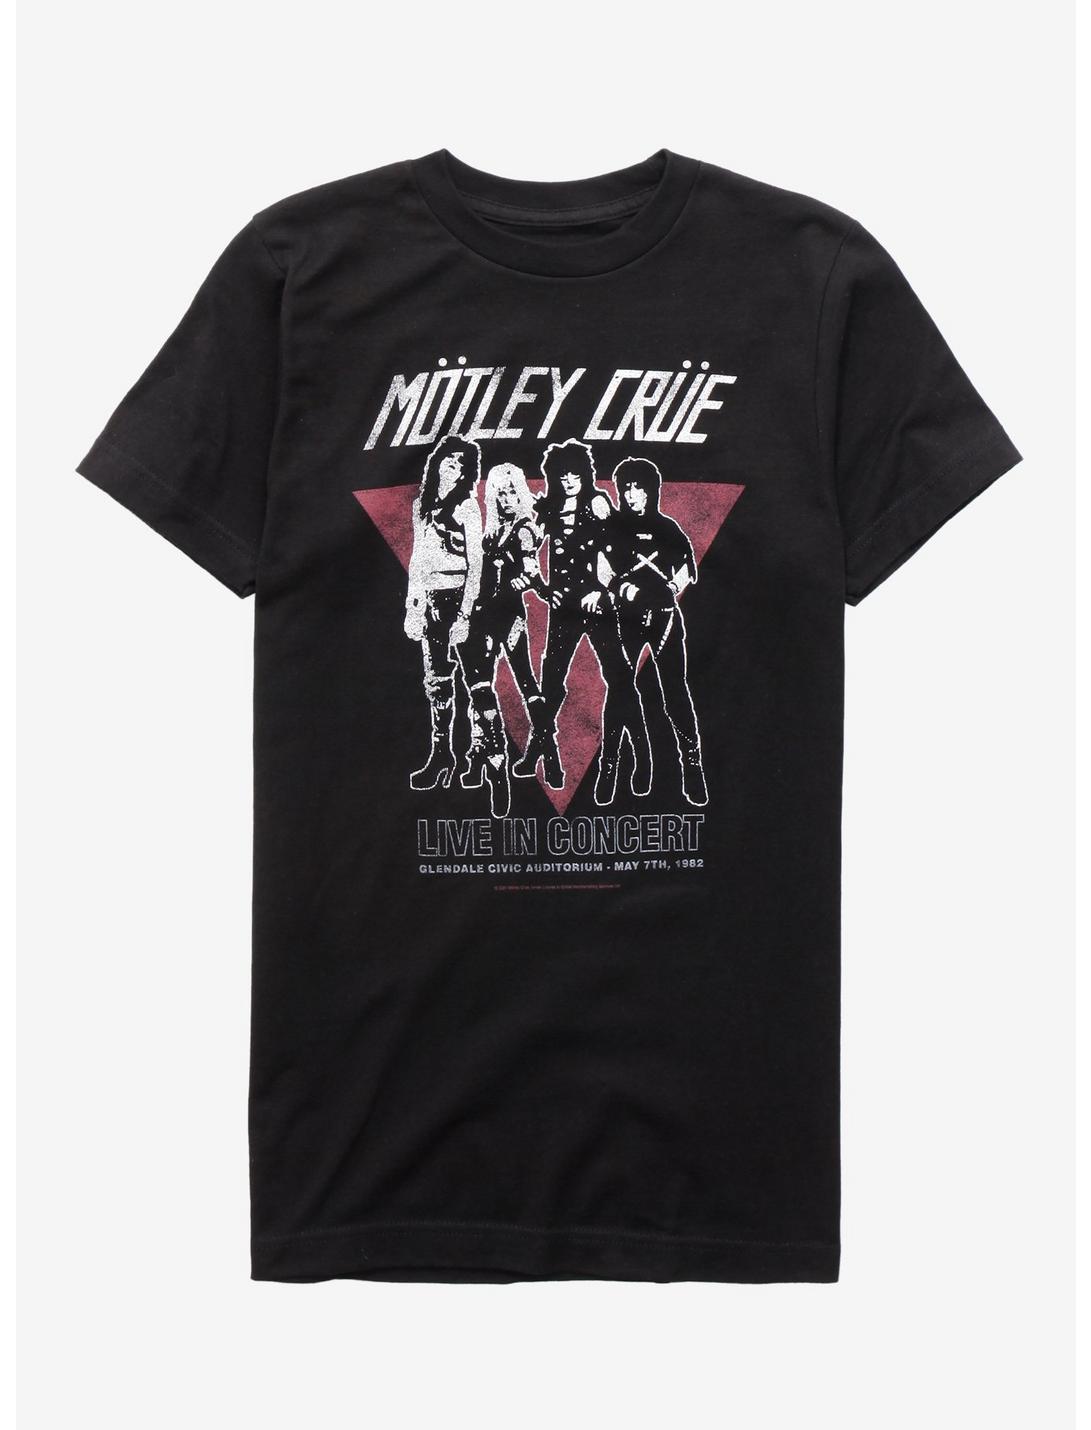 Motley Crue Live In Concert Girls T-Shirt, BLACK, hi-res